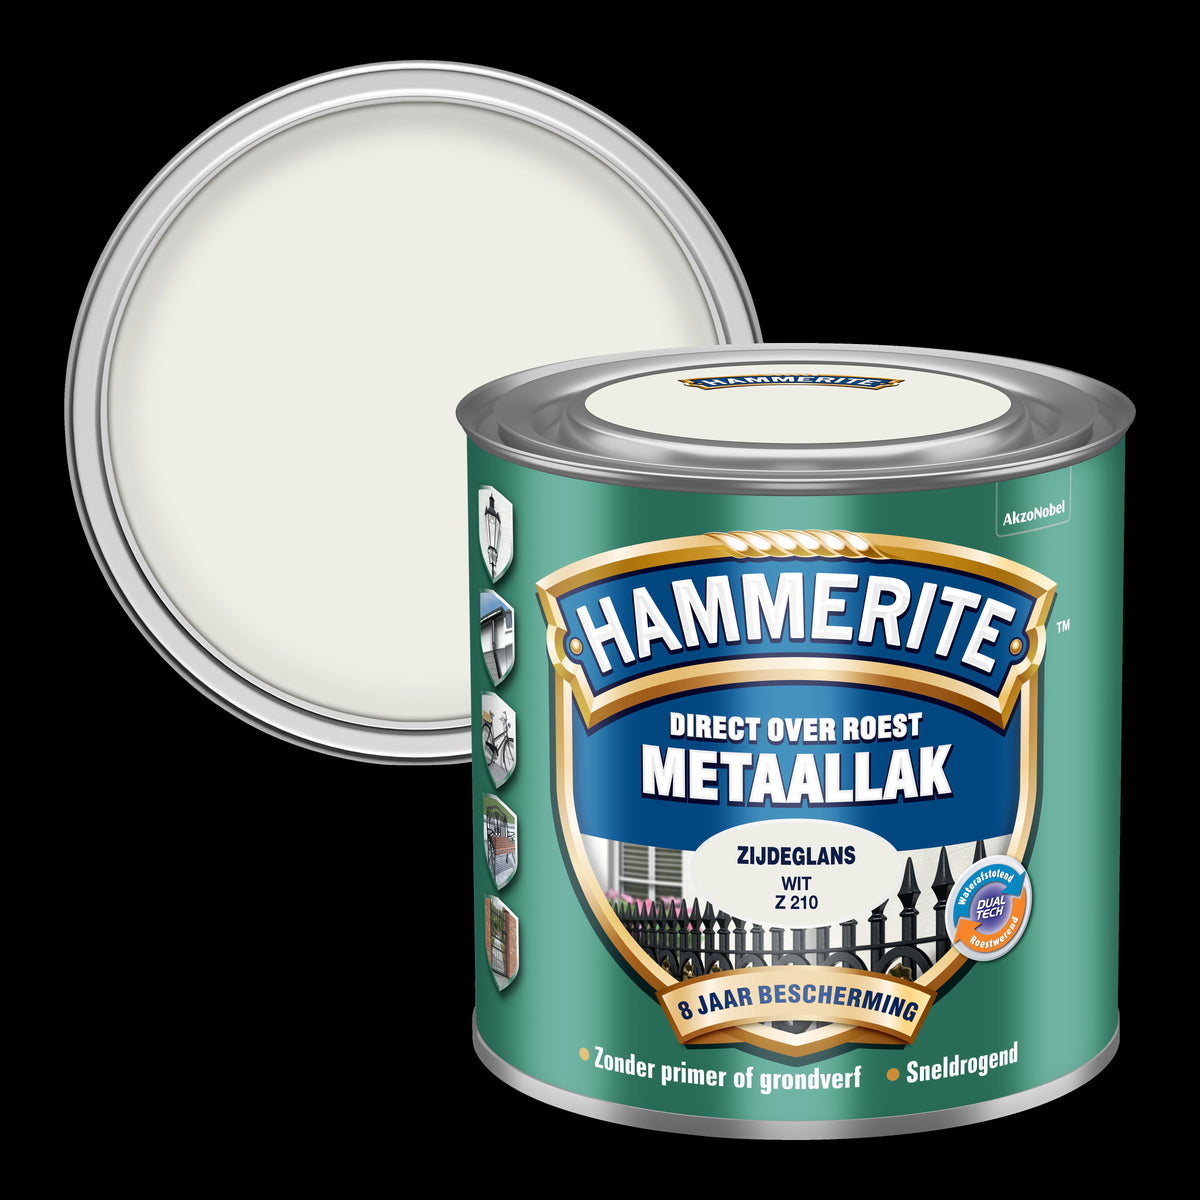 Hammerite metaallak blanc Z210 zijdeglans 250ml